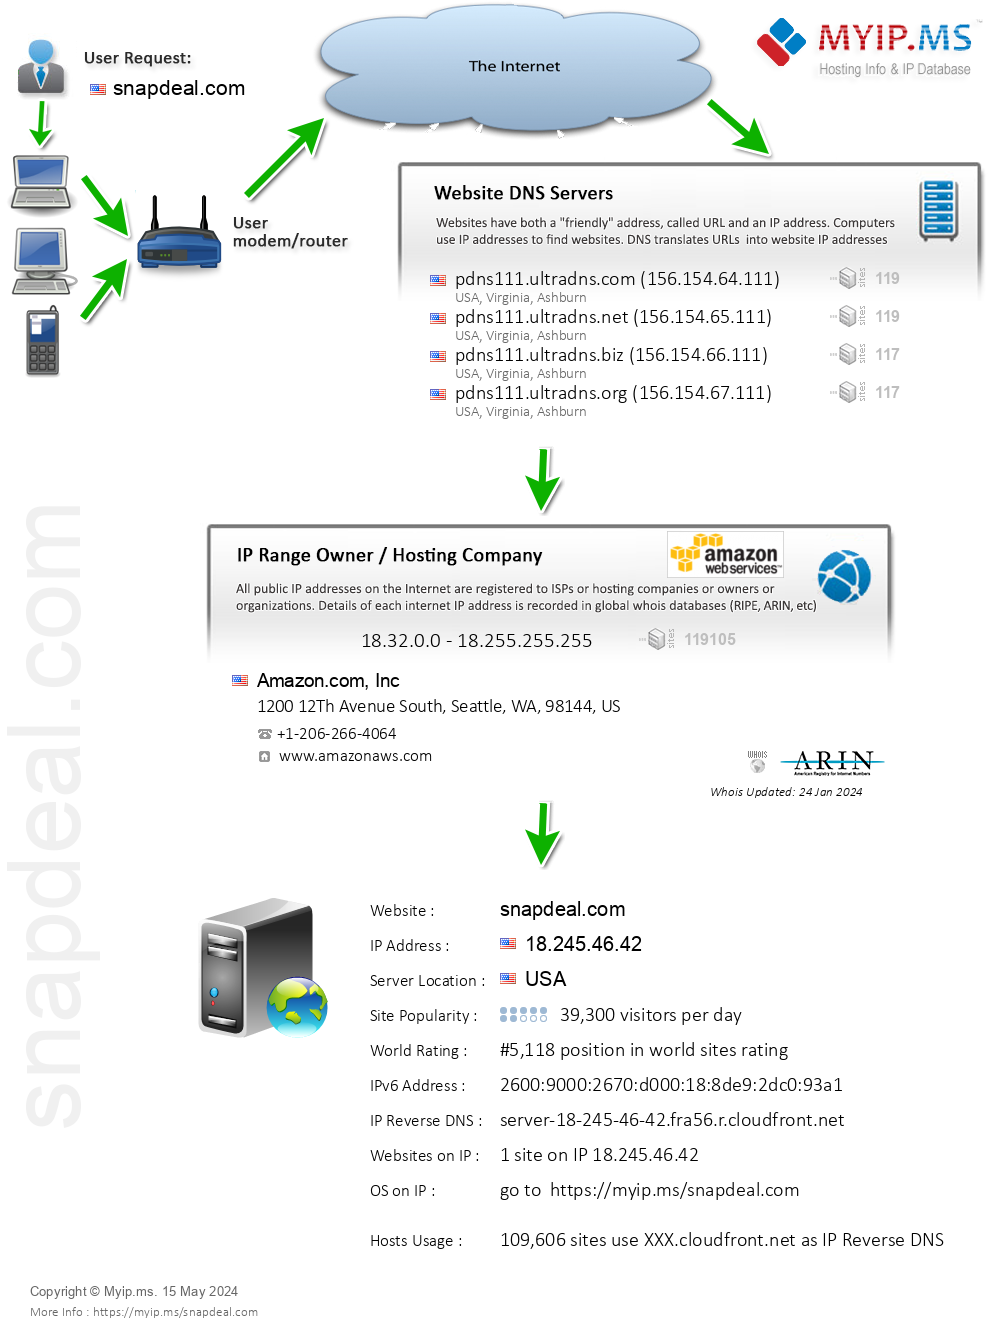 Snapdeal.com - Website Hosting Visual IP Diagram